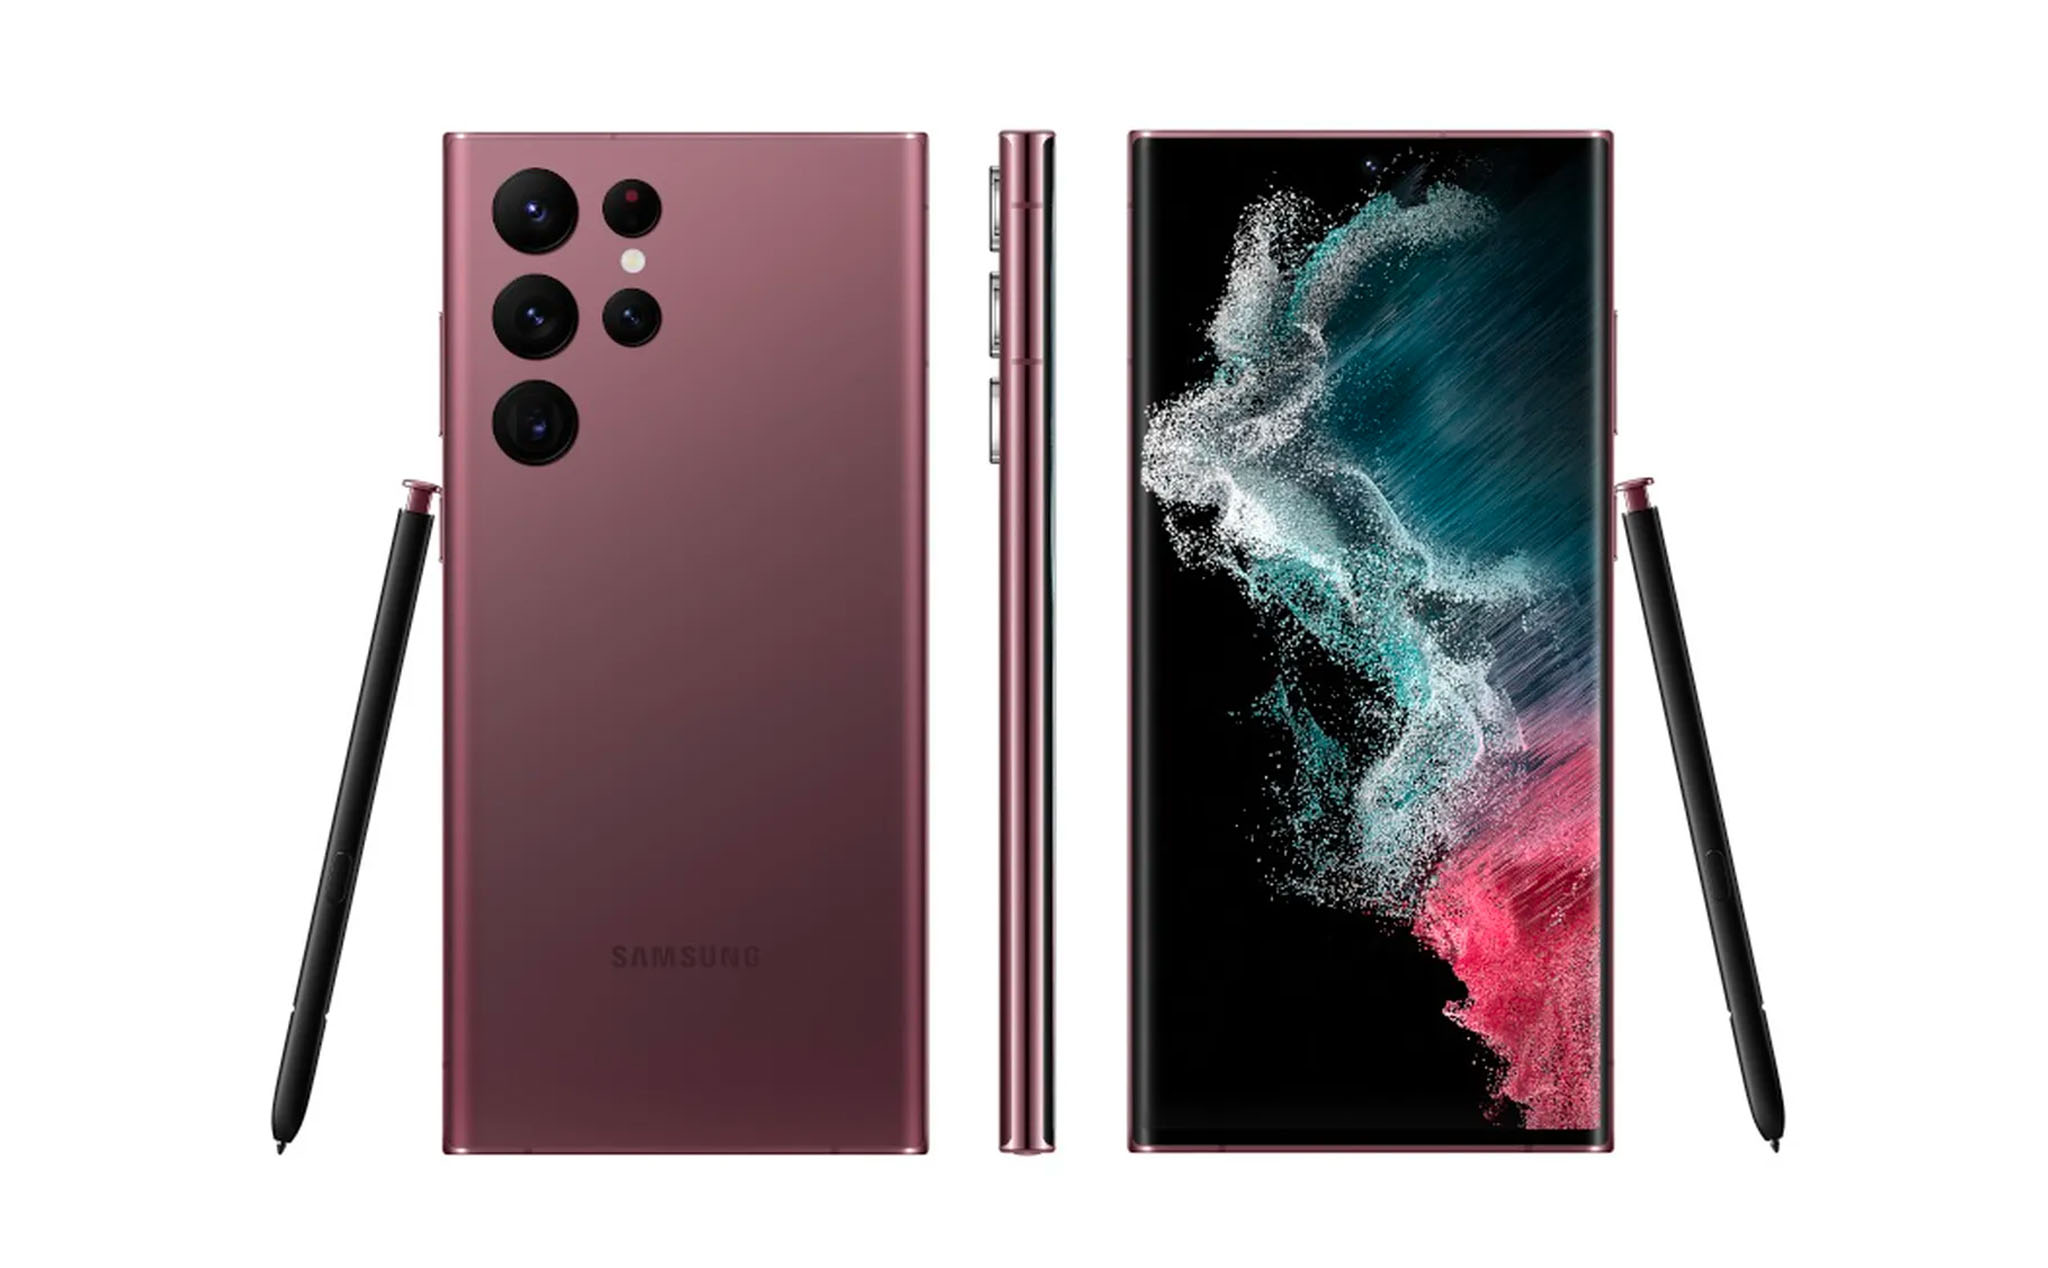 Series Galaxy S22 sẽ được ra mắt trong sự kiện Samsung Galaxy Unpacked 2022 tổ chức ngày 08/02